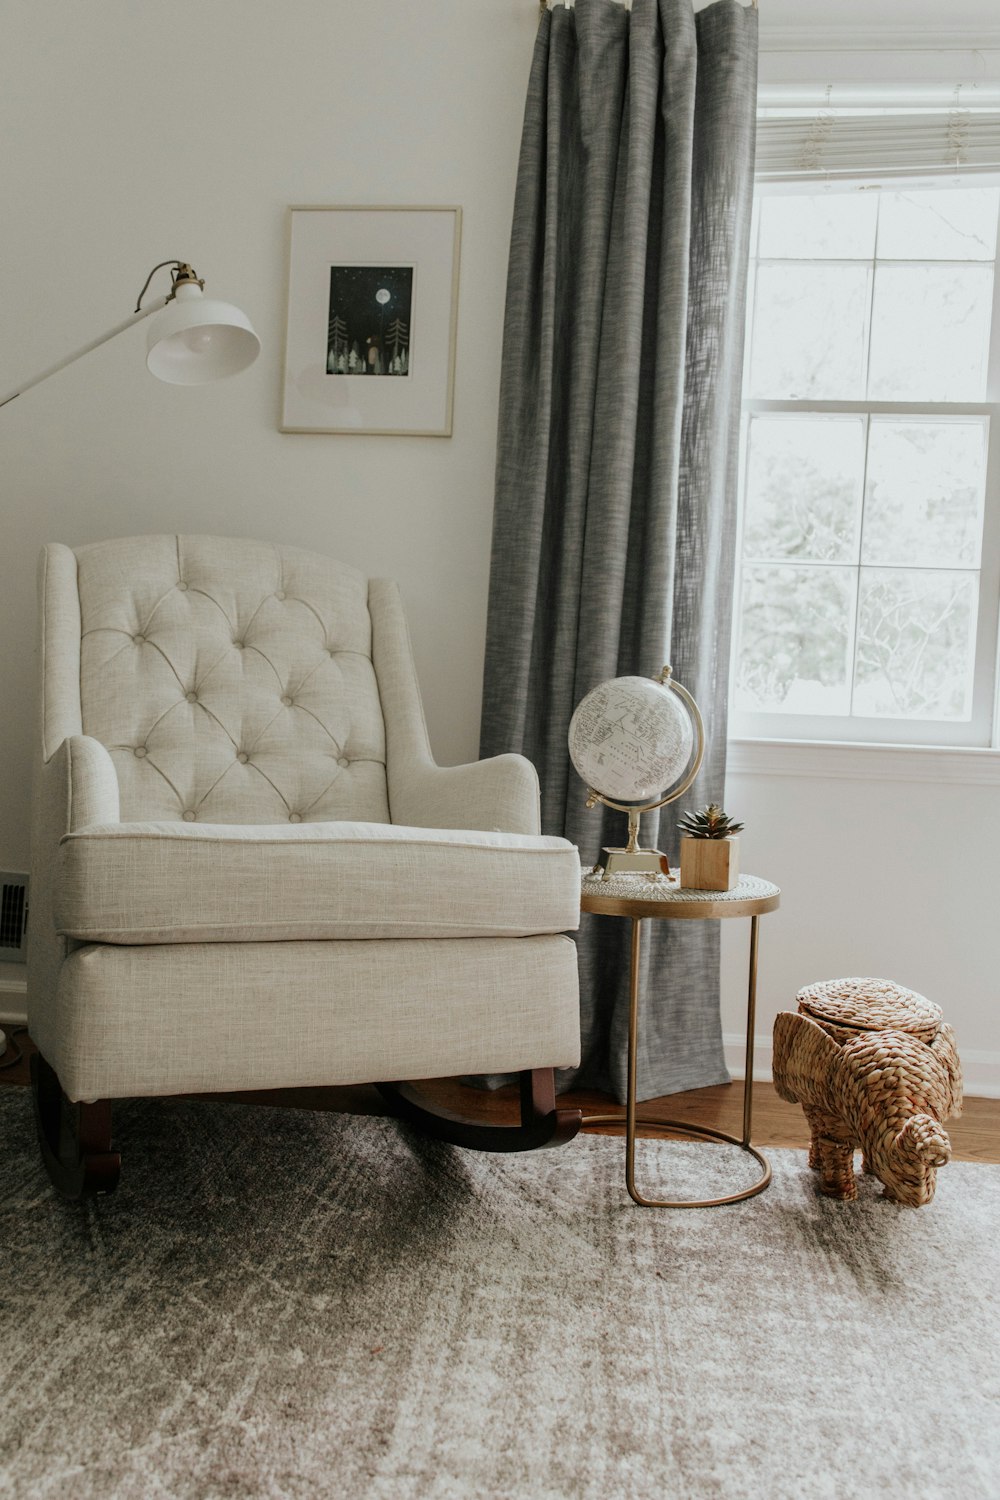 white sofa chair near white window curtain